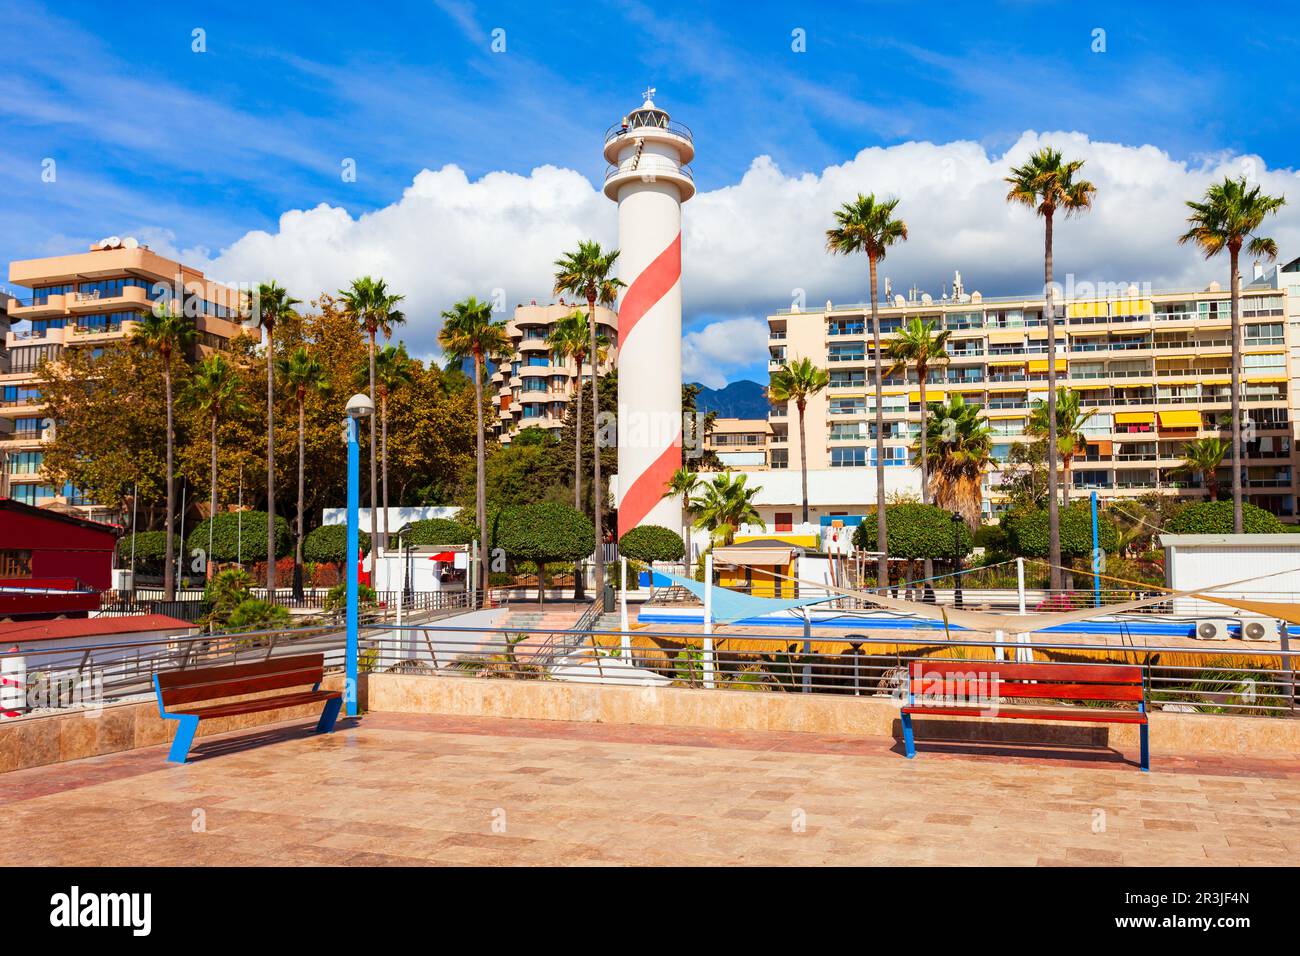 Promenade et phare de la plage de Marbella. Marbella est une ville de la province de Malaga en Andalousie, Espagne. Banque D'Images